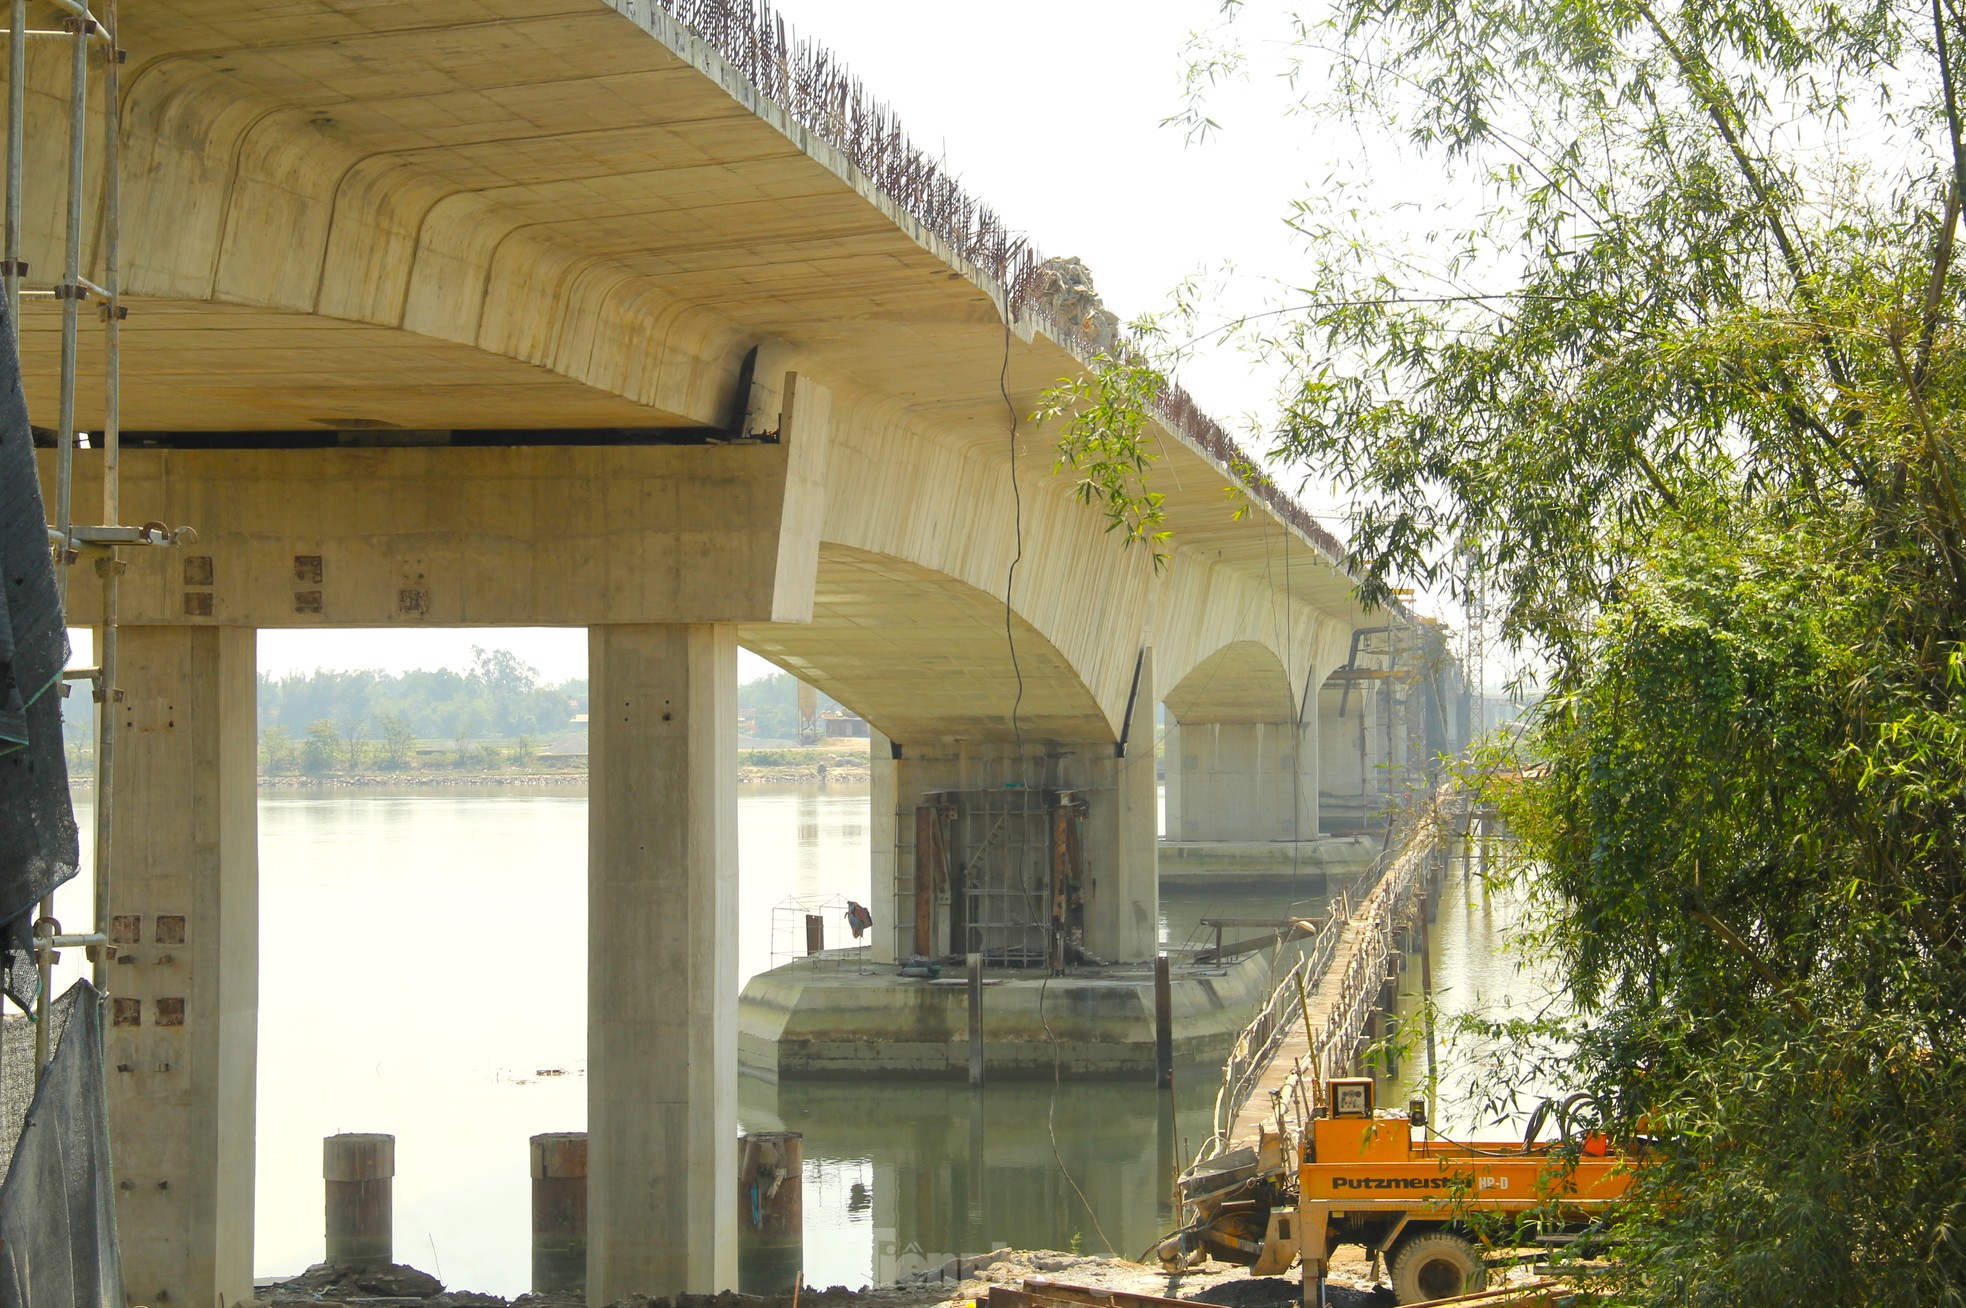 Cầu vượt sông nối 2 tỉnh Nghệ An và Hà Tĩnh trước ngày hợp long- Ảnh 7.